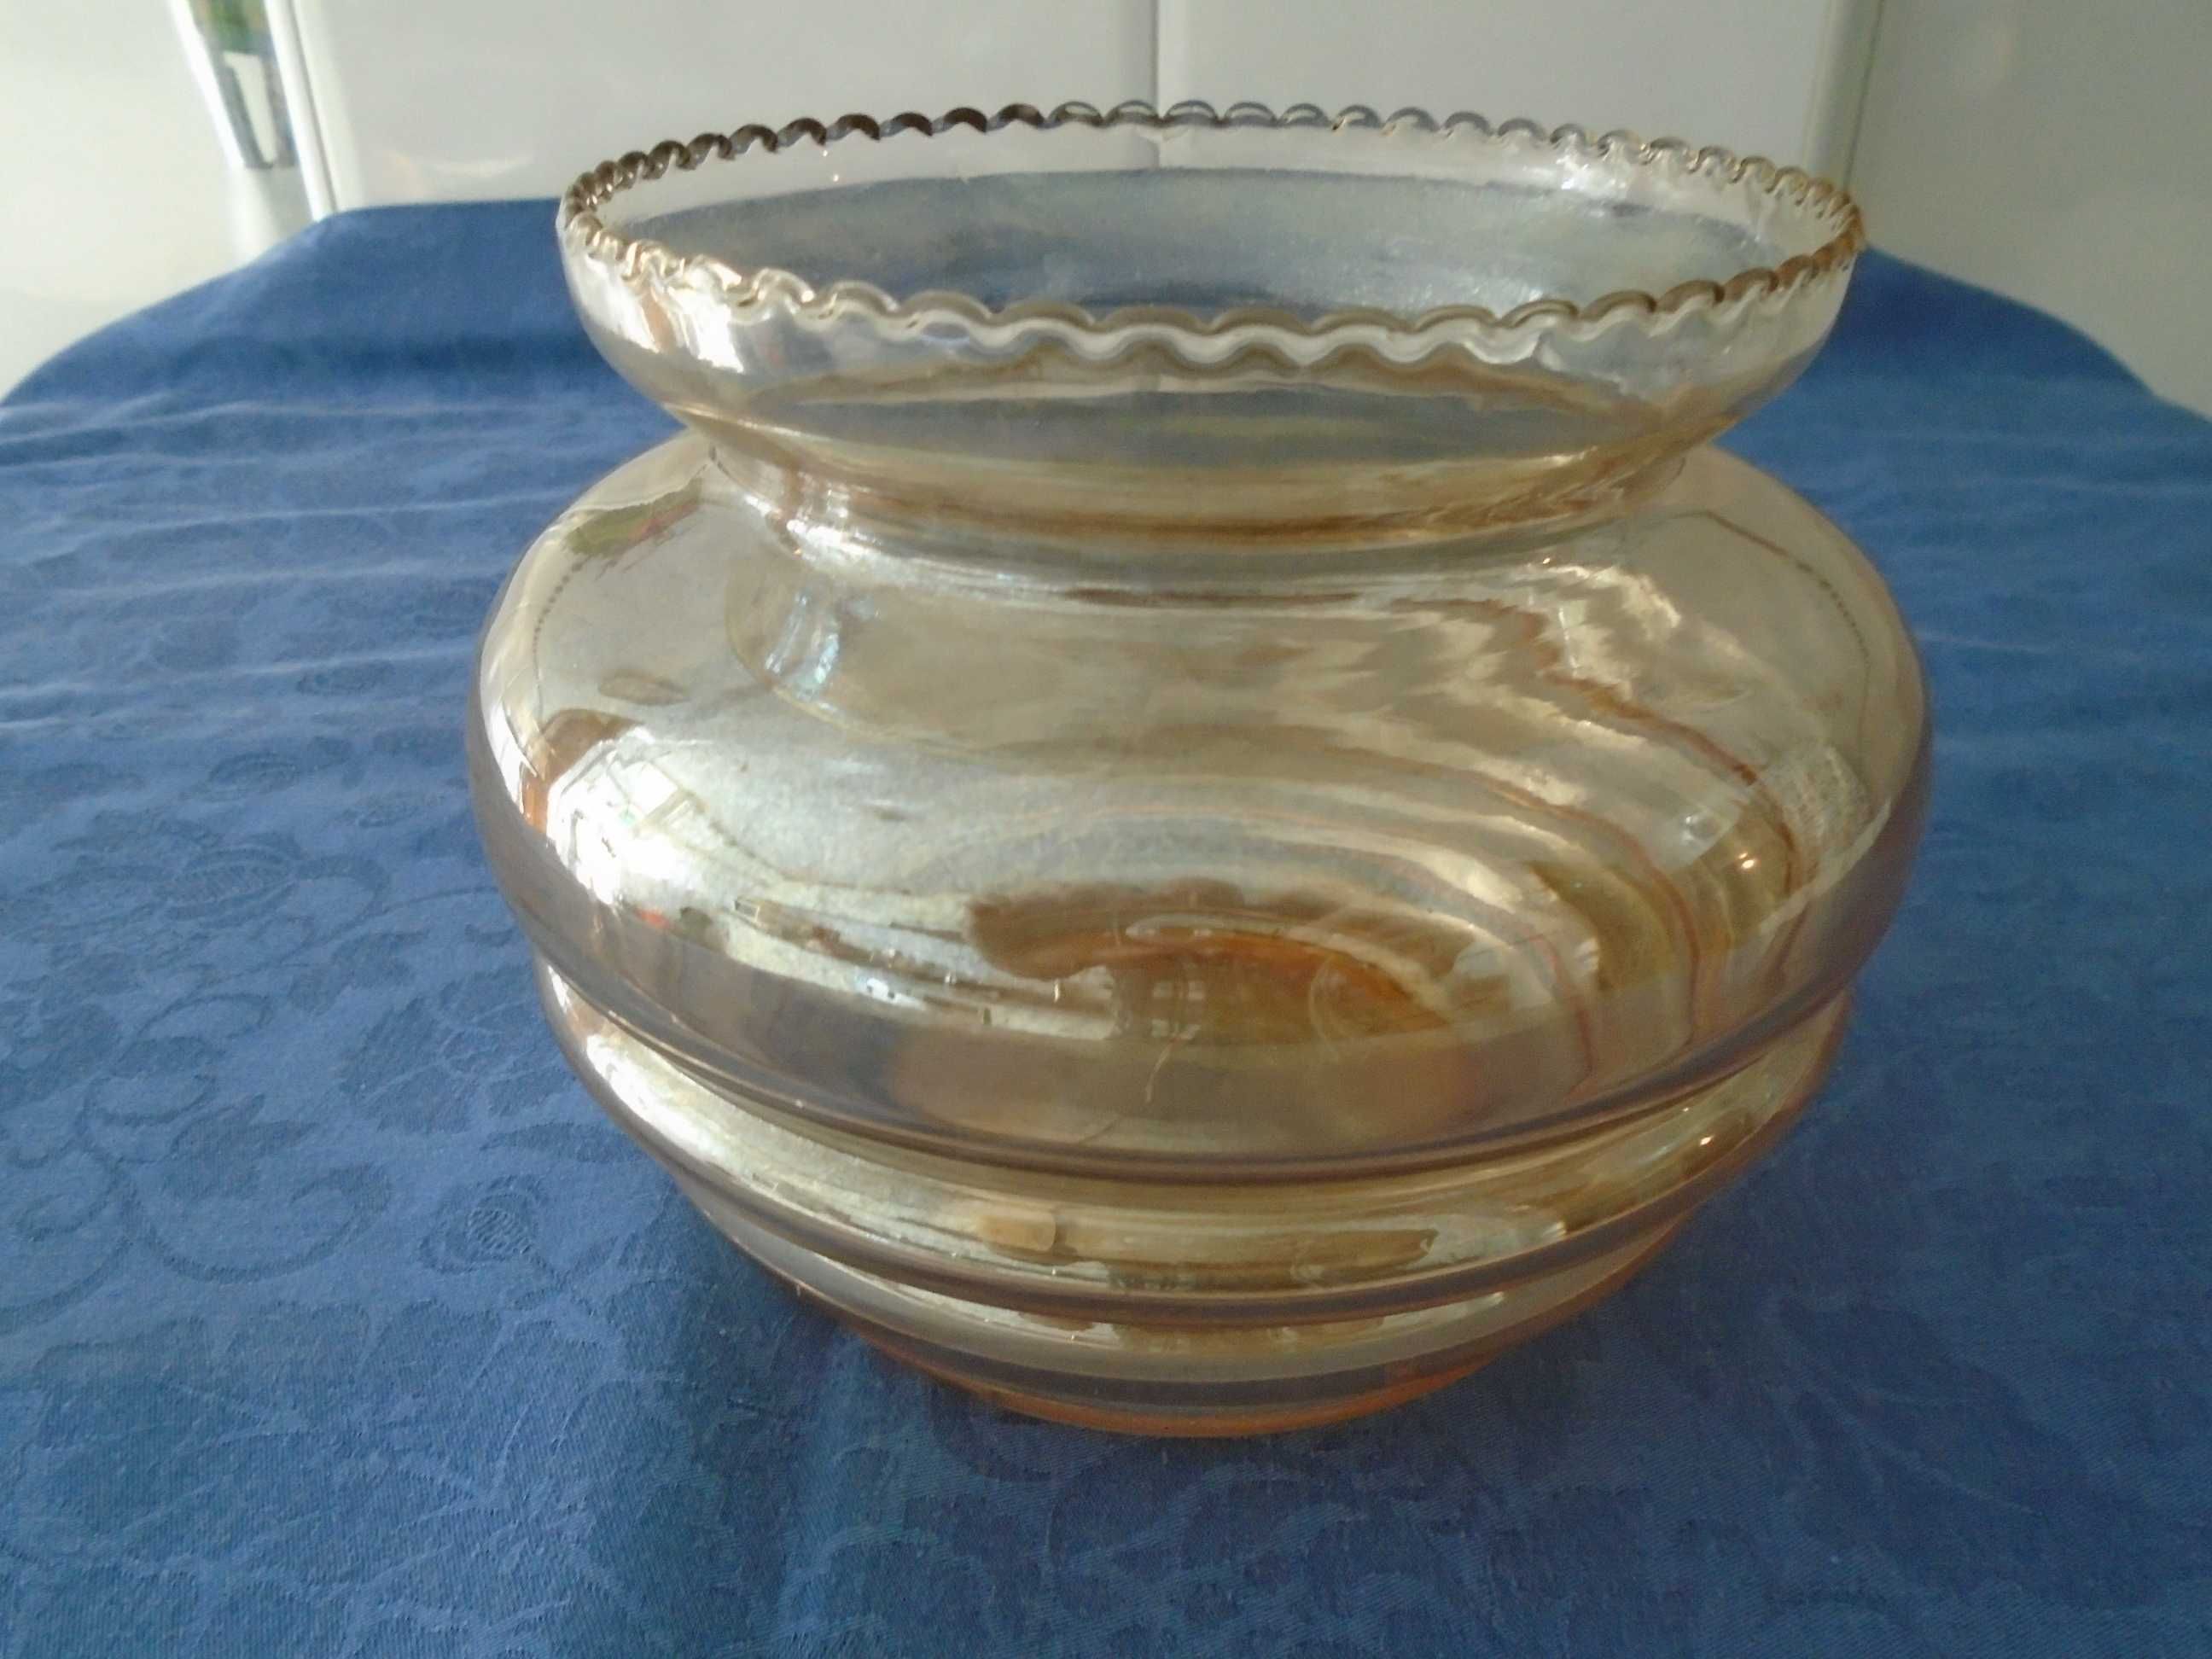 Jarra antiga em vidro (casca de cebola) - altura 14 cm